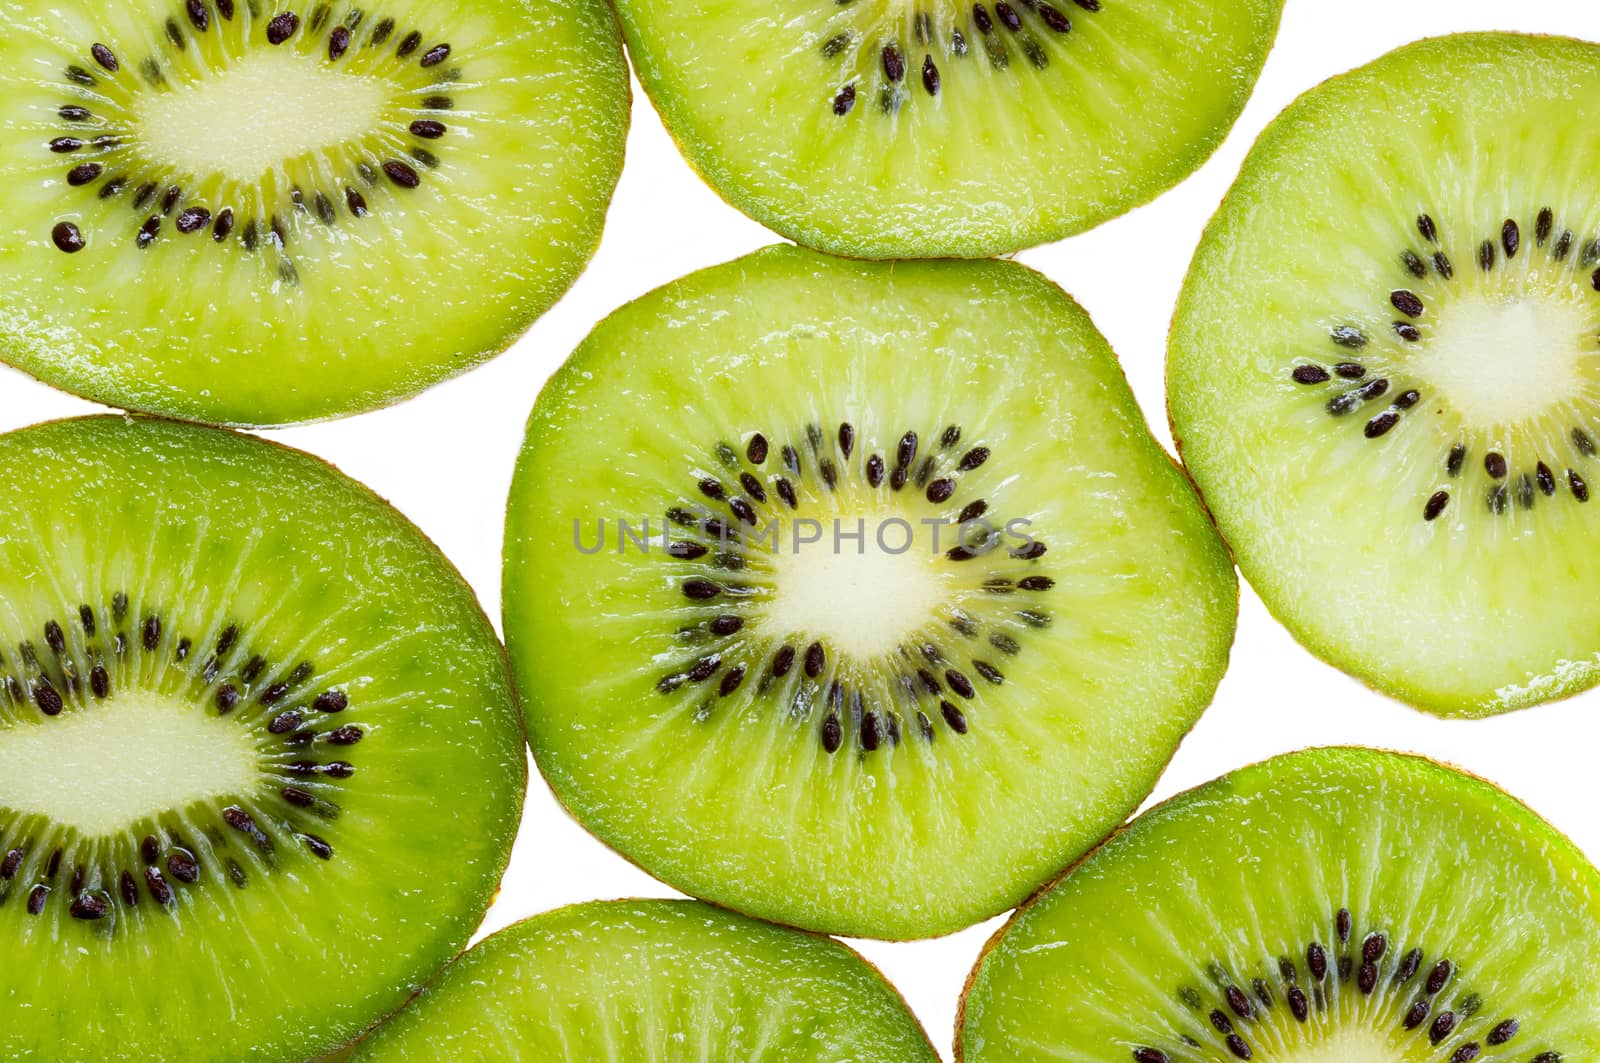 Many slices of kiwi fruit on white background.